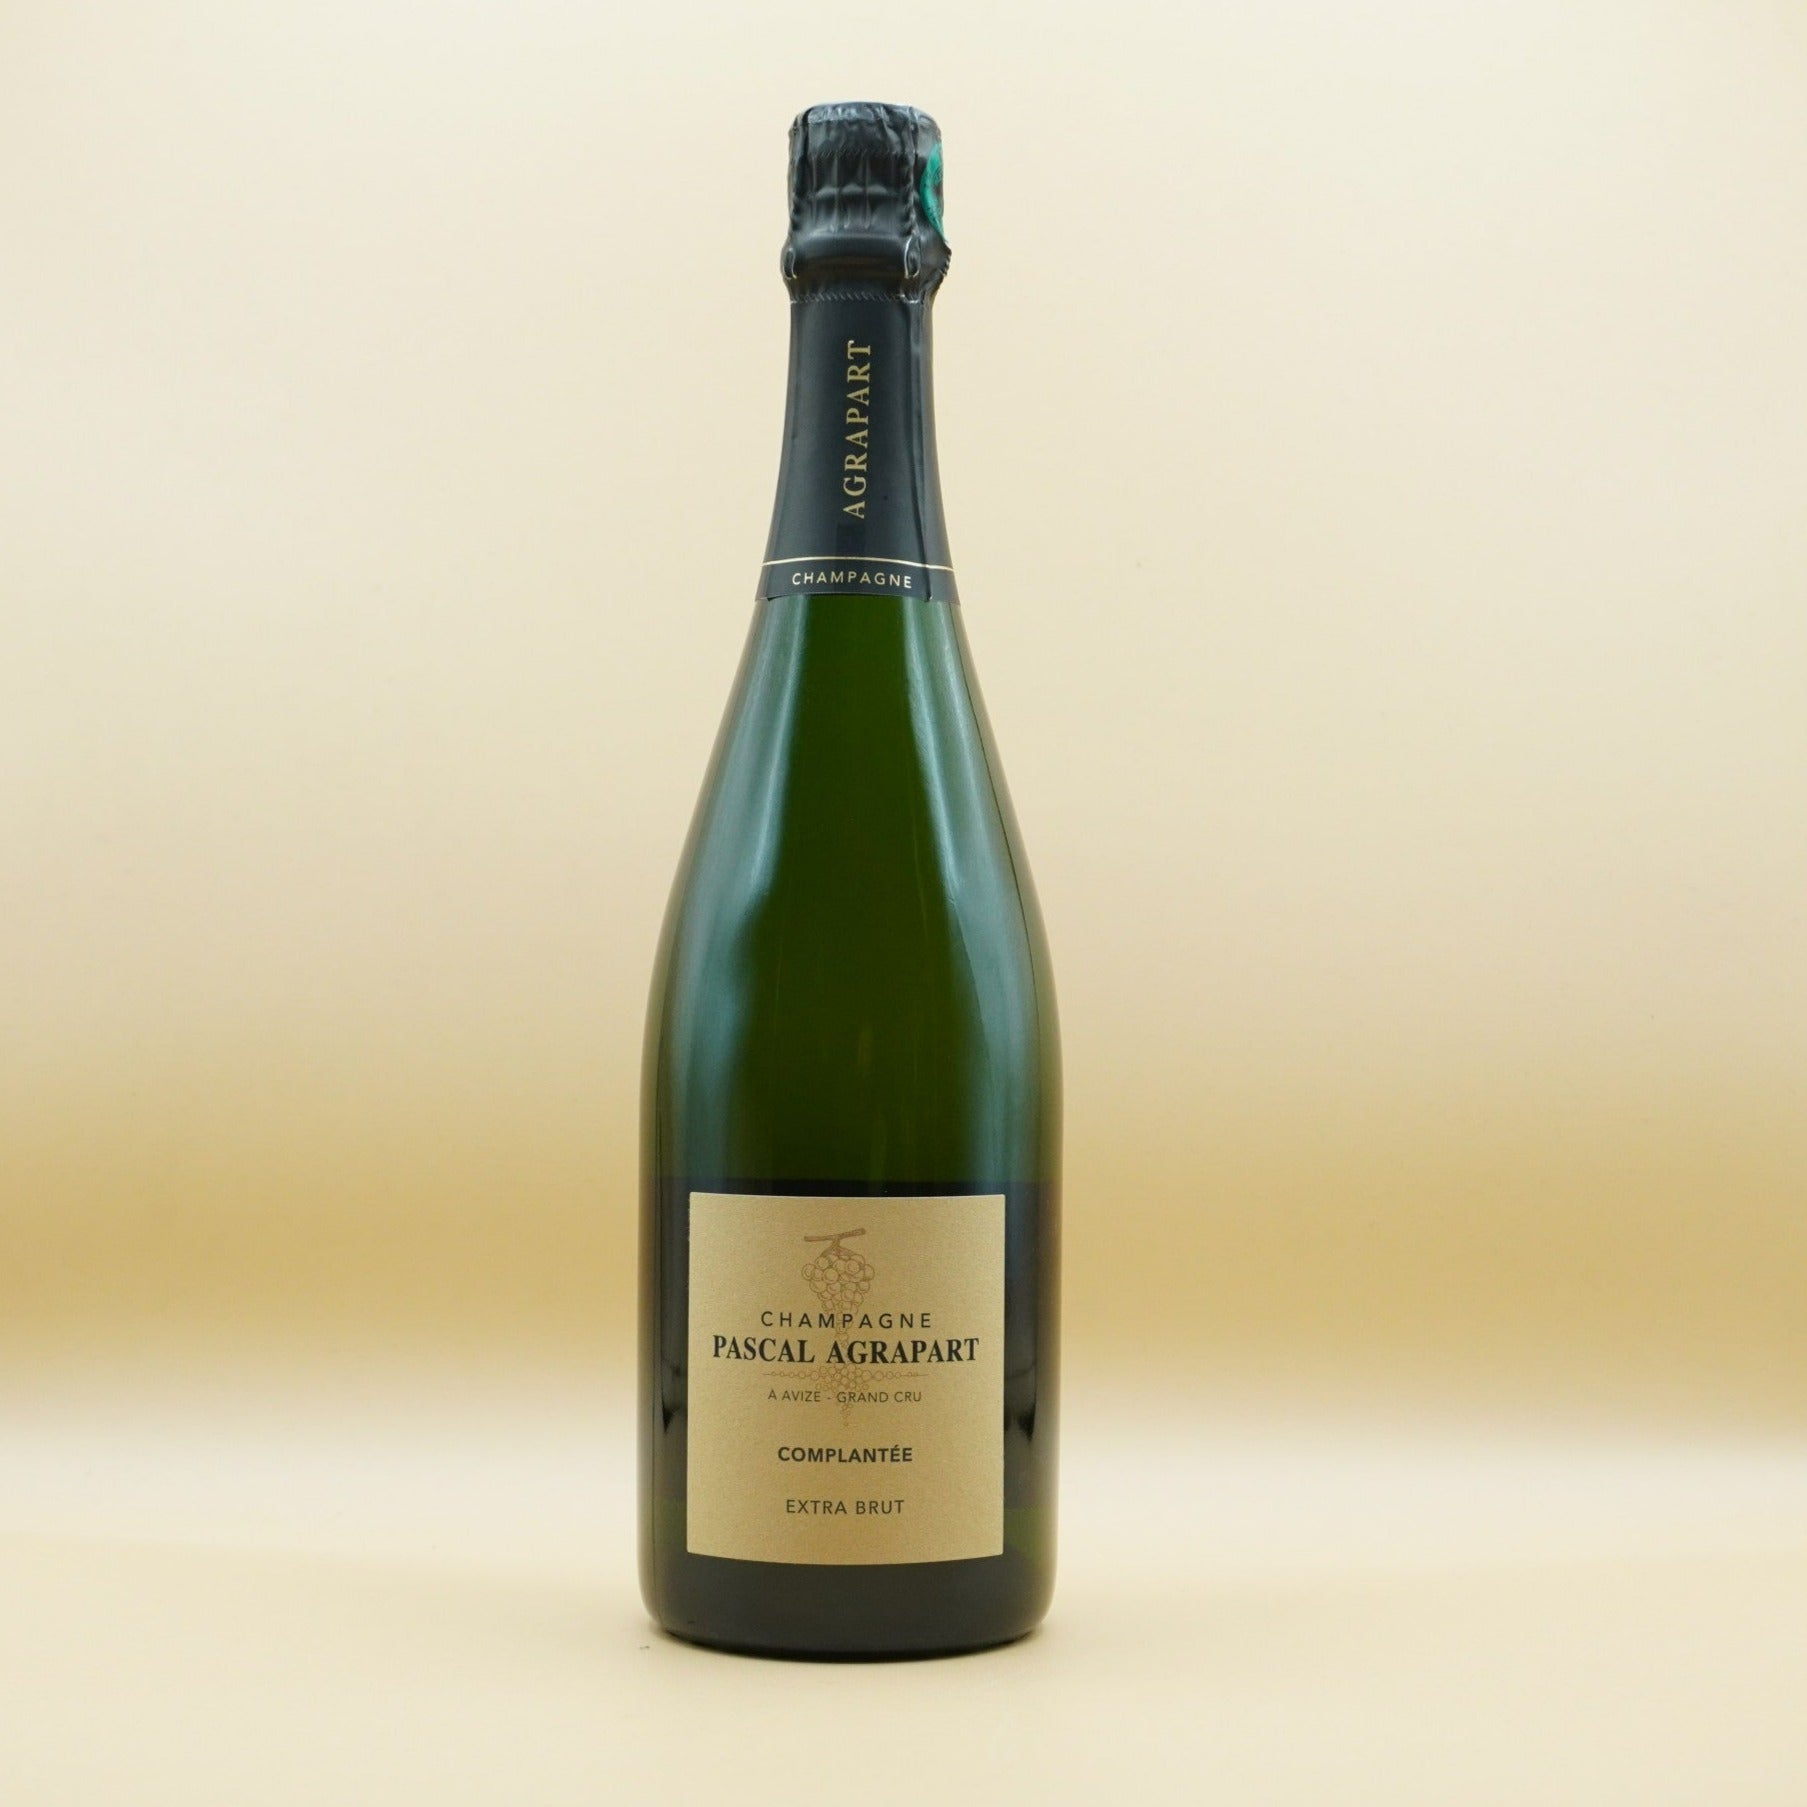 Agrapart & Fils, Champagne Grand Cru 'Complantée' Extra Brut NV